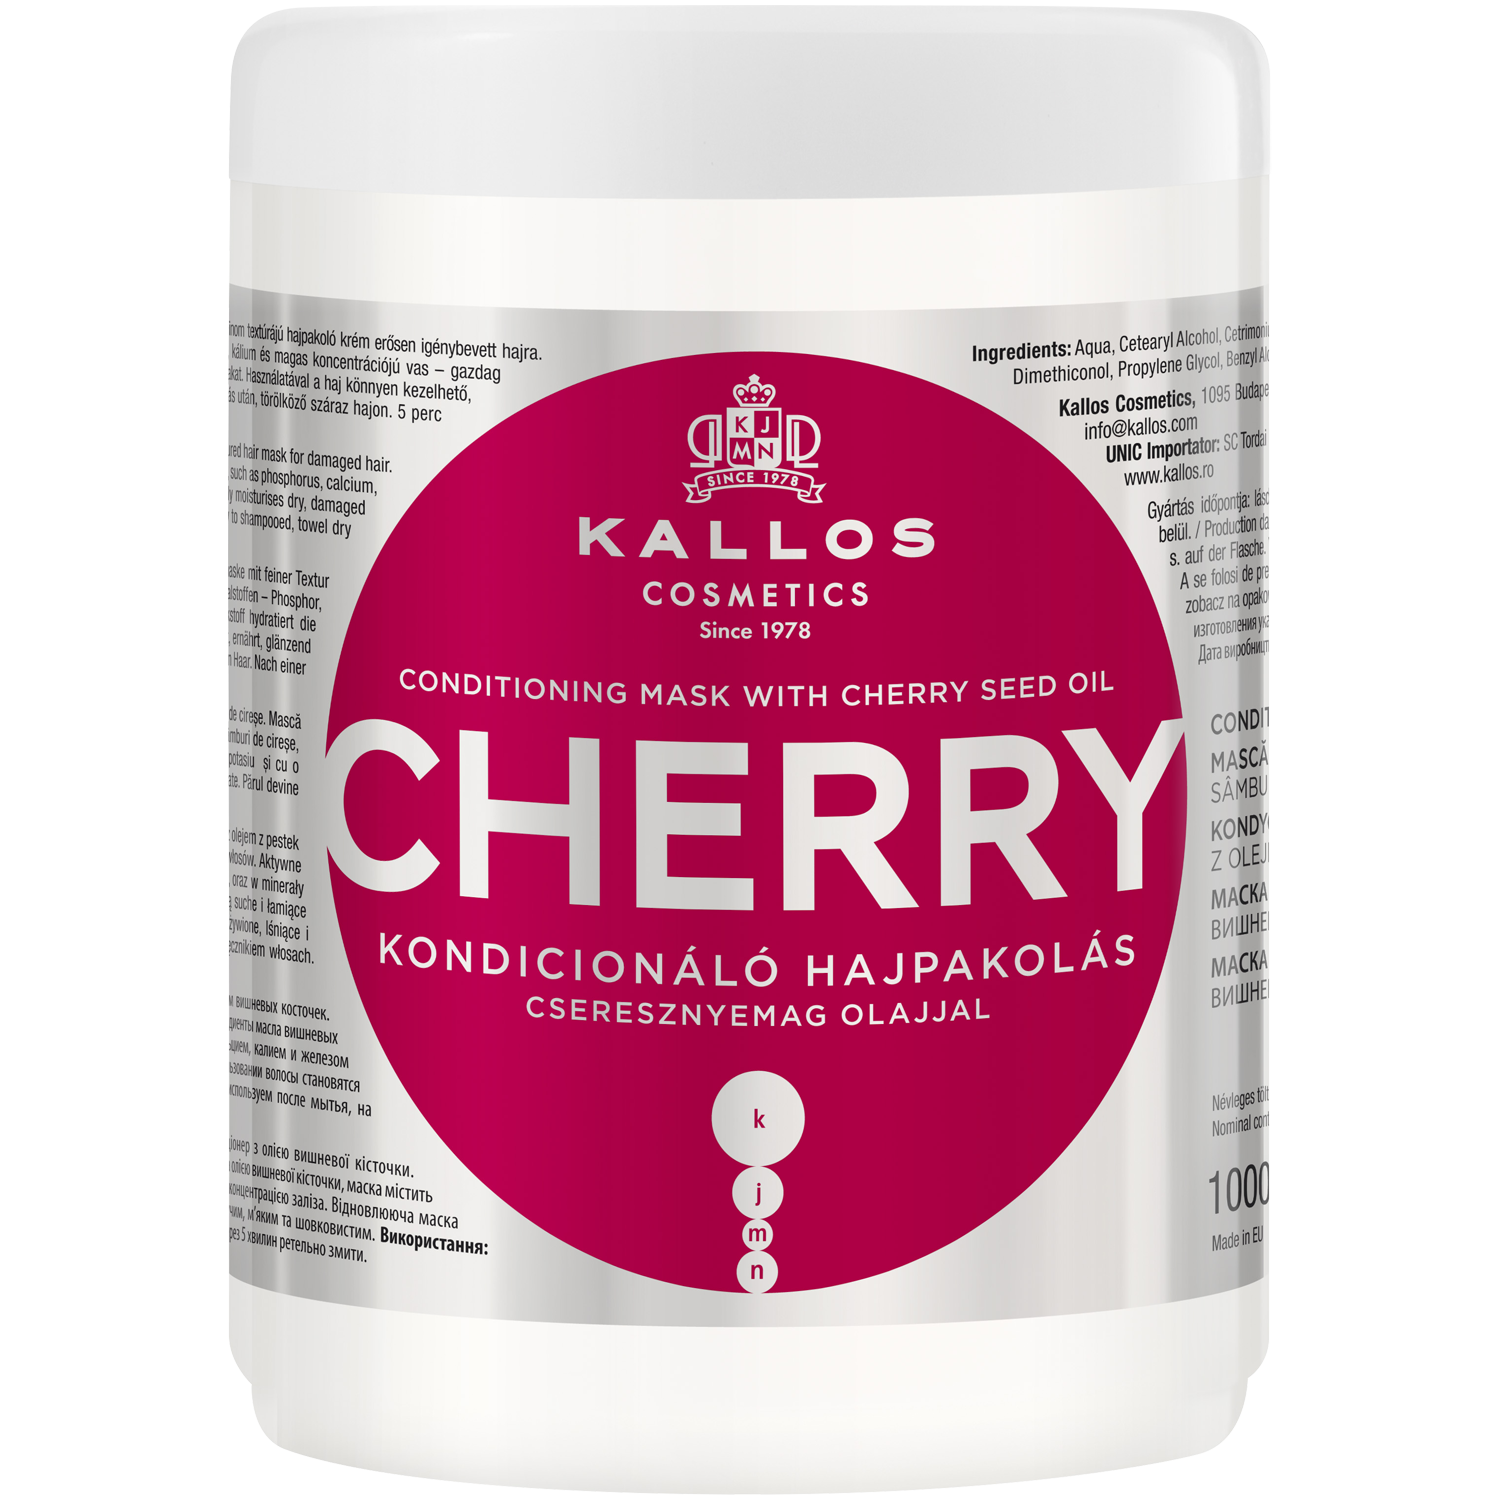 Kallos Cherry